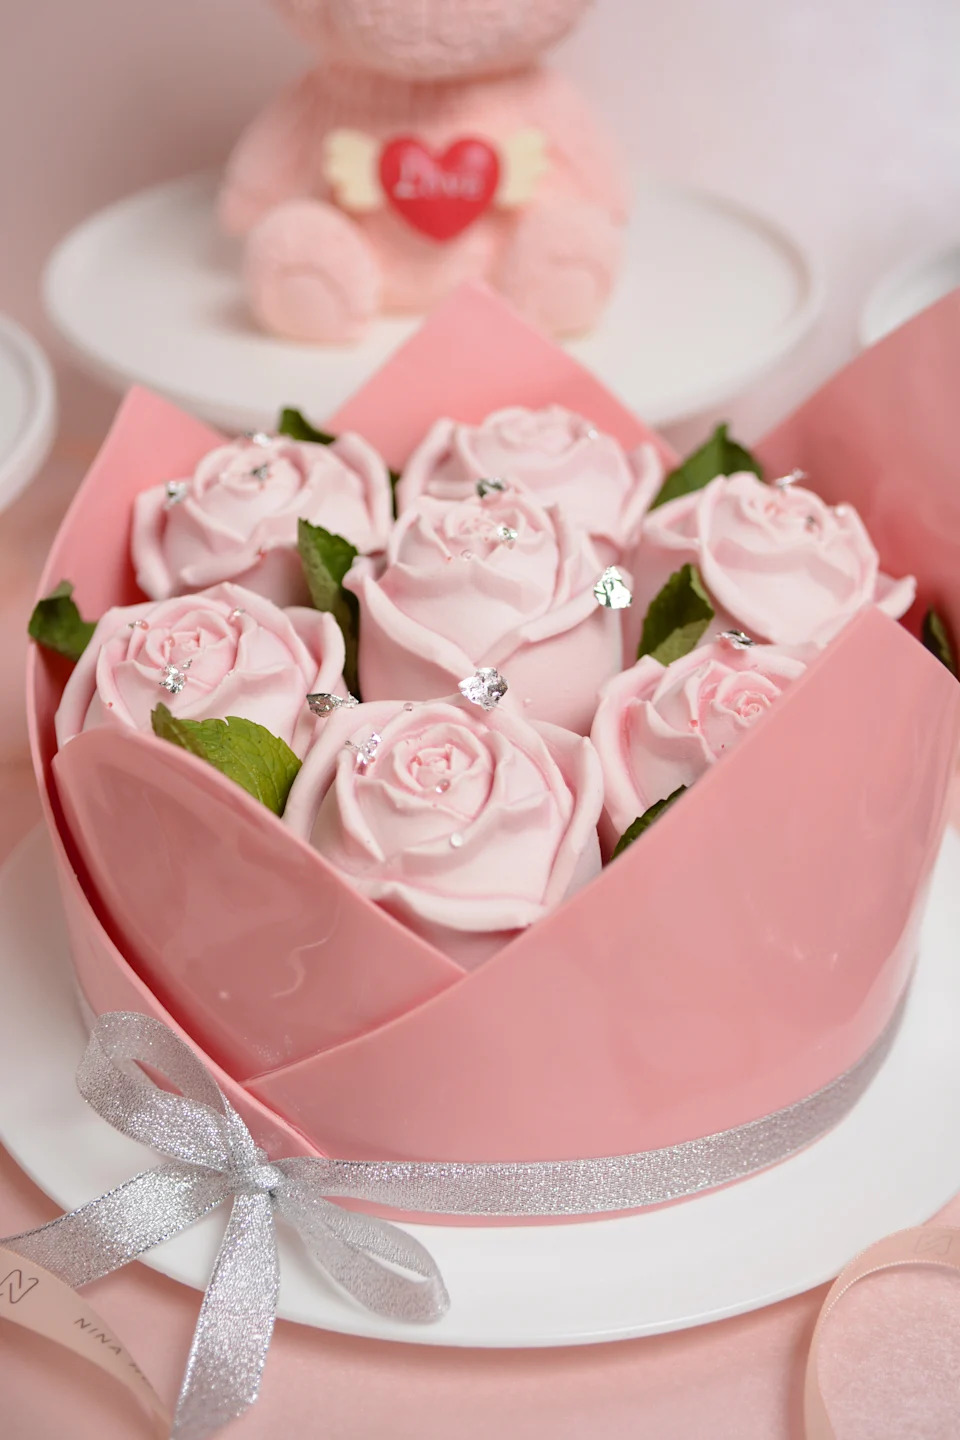 母親節有玫瑰花束造型的彩虹忌廉蛋糕。